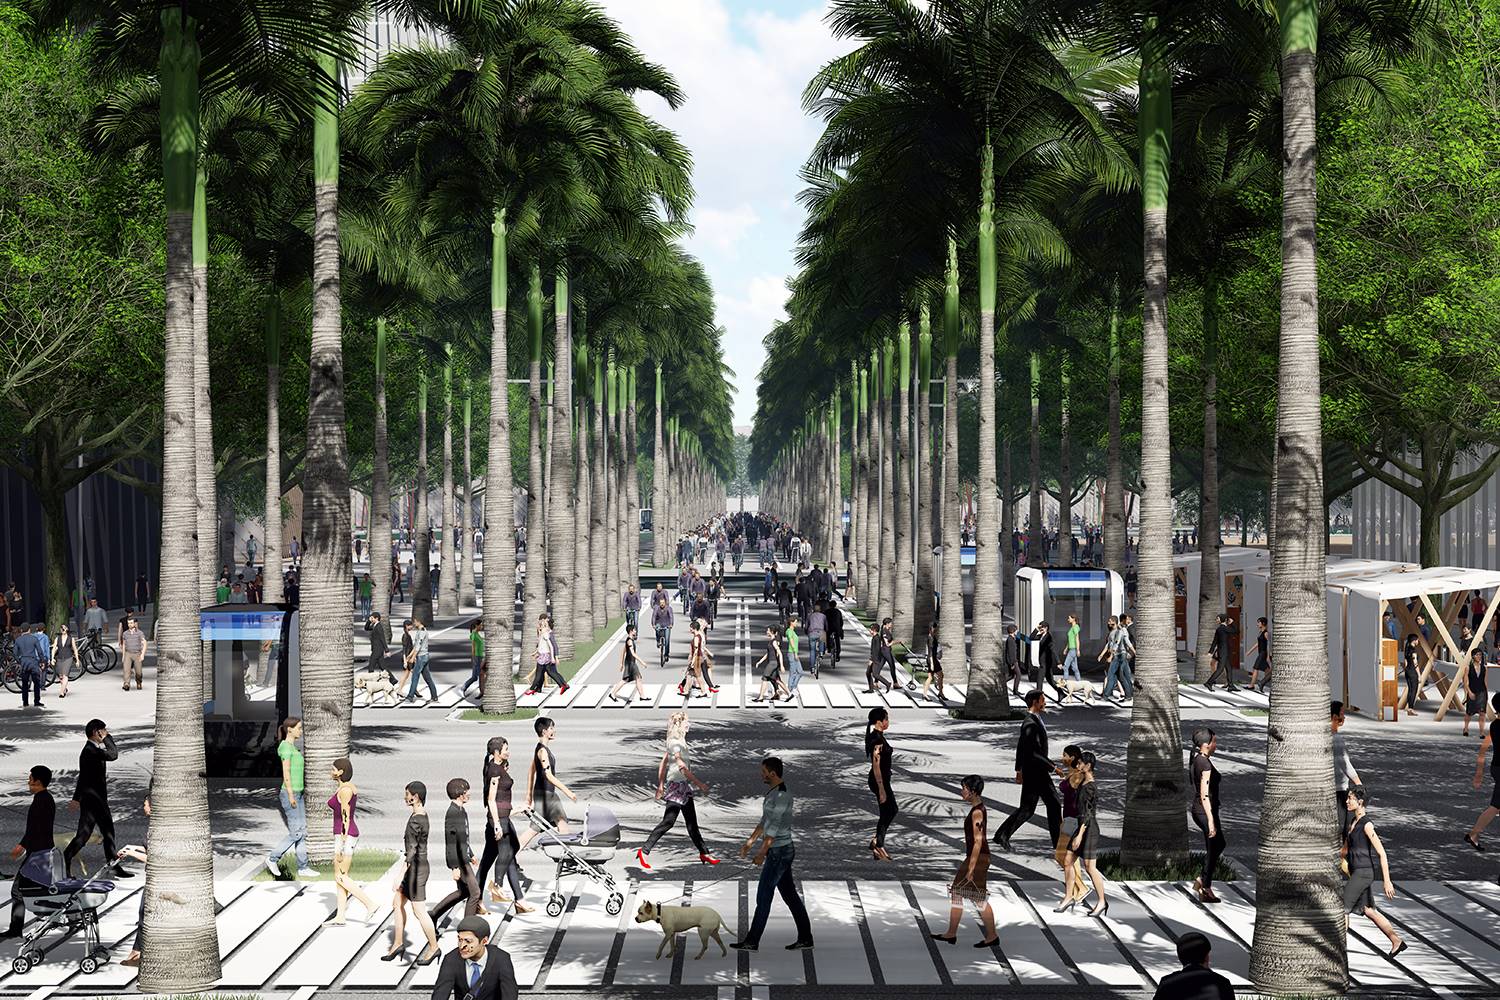 El nuevo centro urbano en Shenzhen de Vicente Guallart tendrá una zona libre de vehículos.